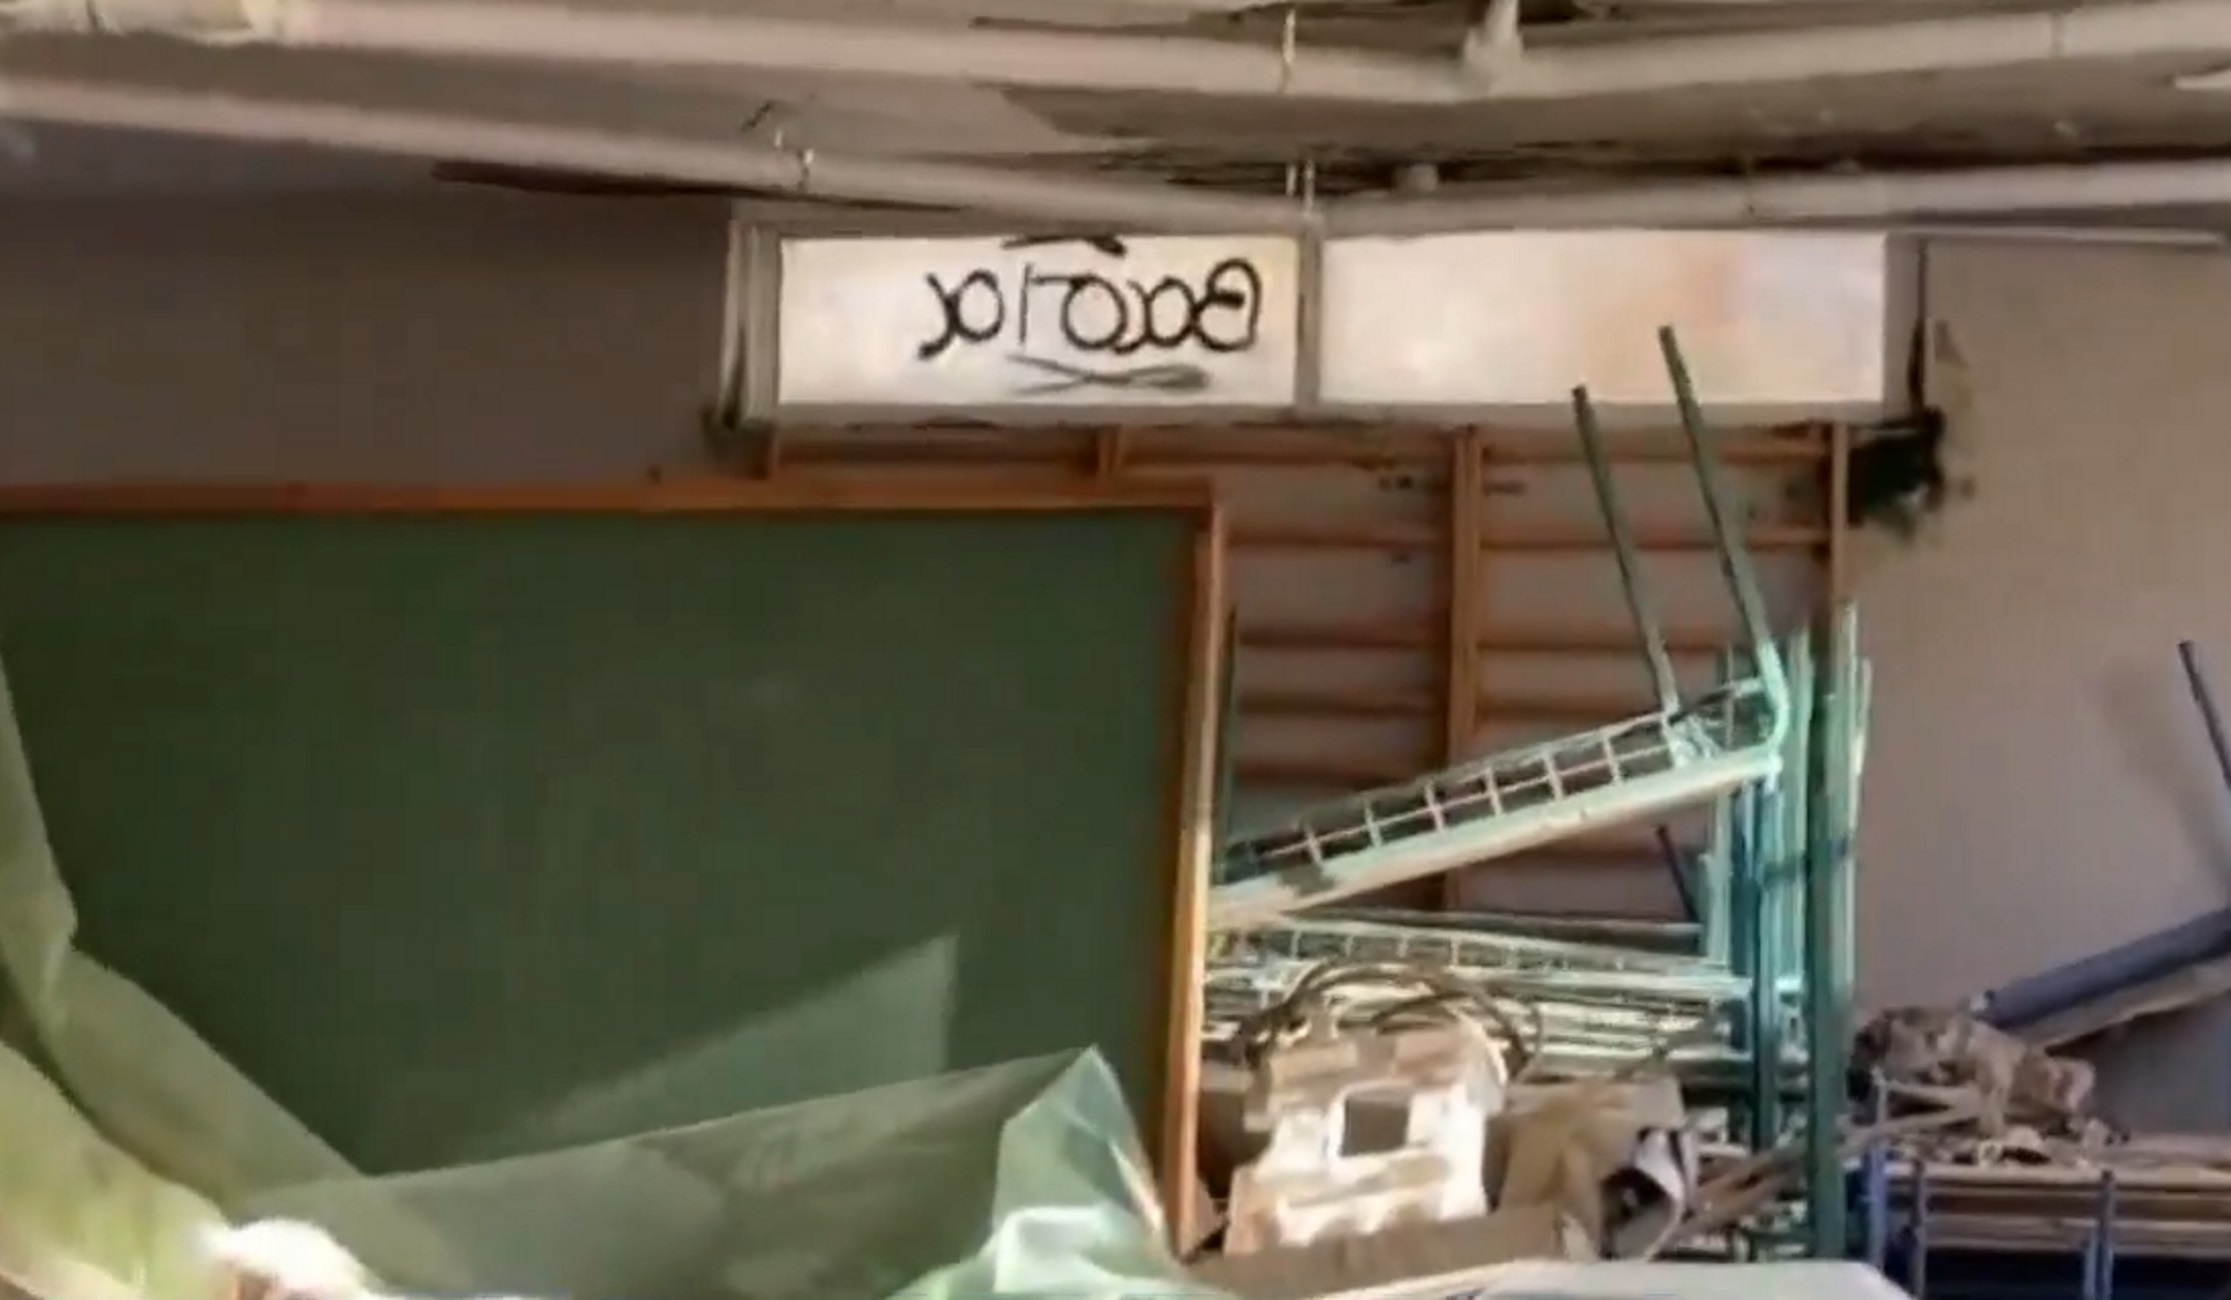 Ικαρία: Εικόνες ντροπής σε σχολείο με σάπια ταβάνια και διαλυμένες αίθουσες